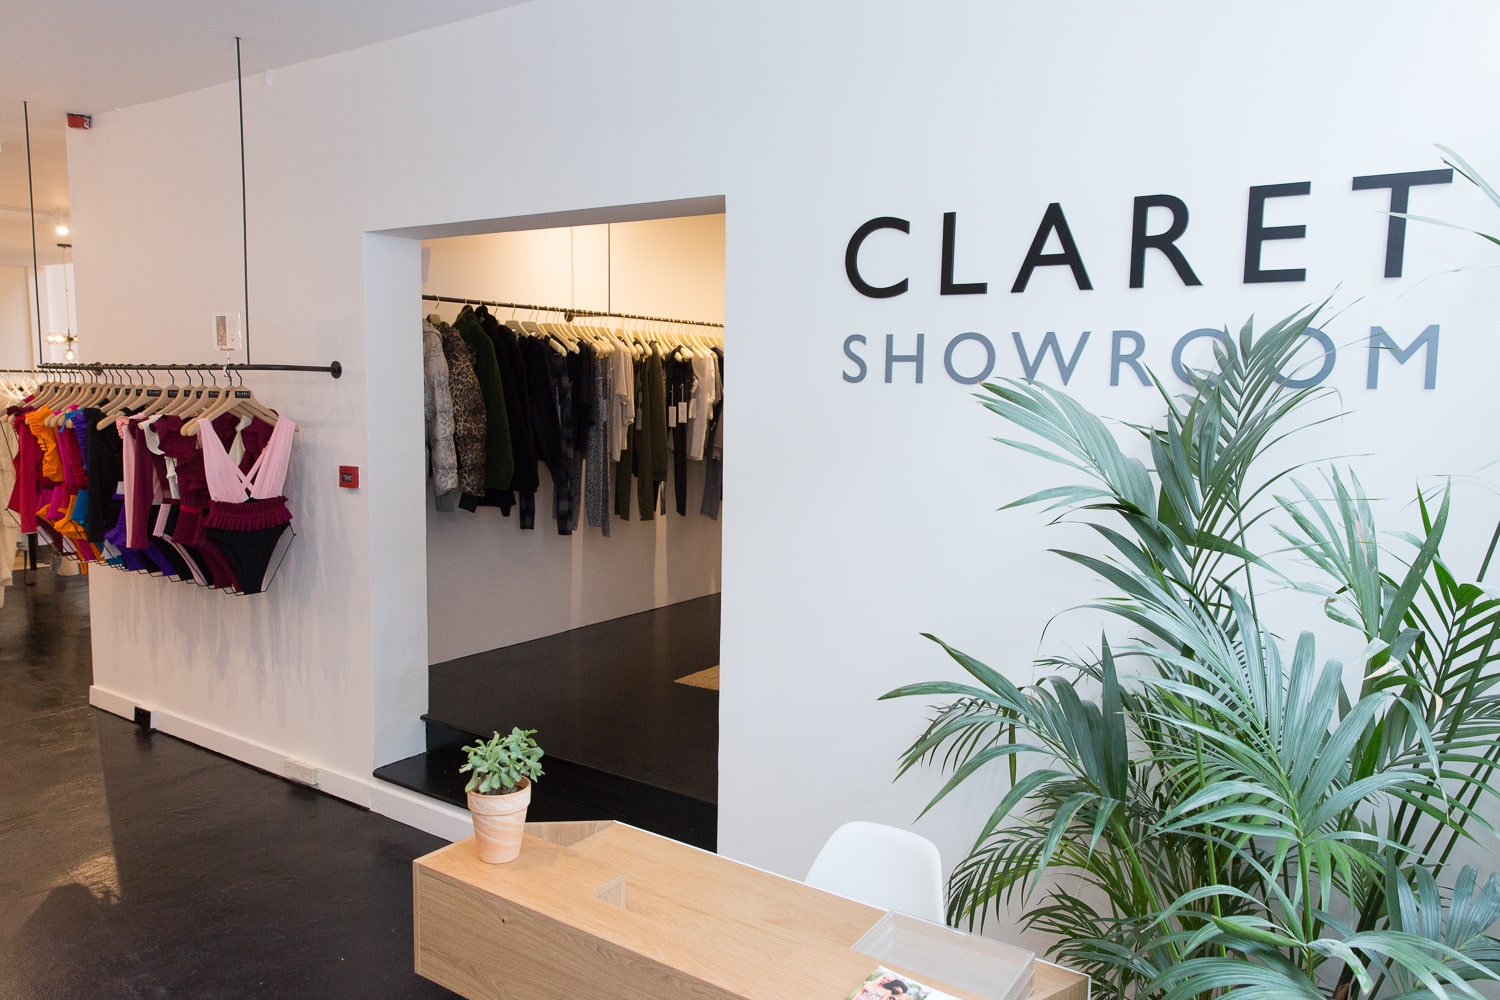 Claret showroom